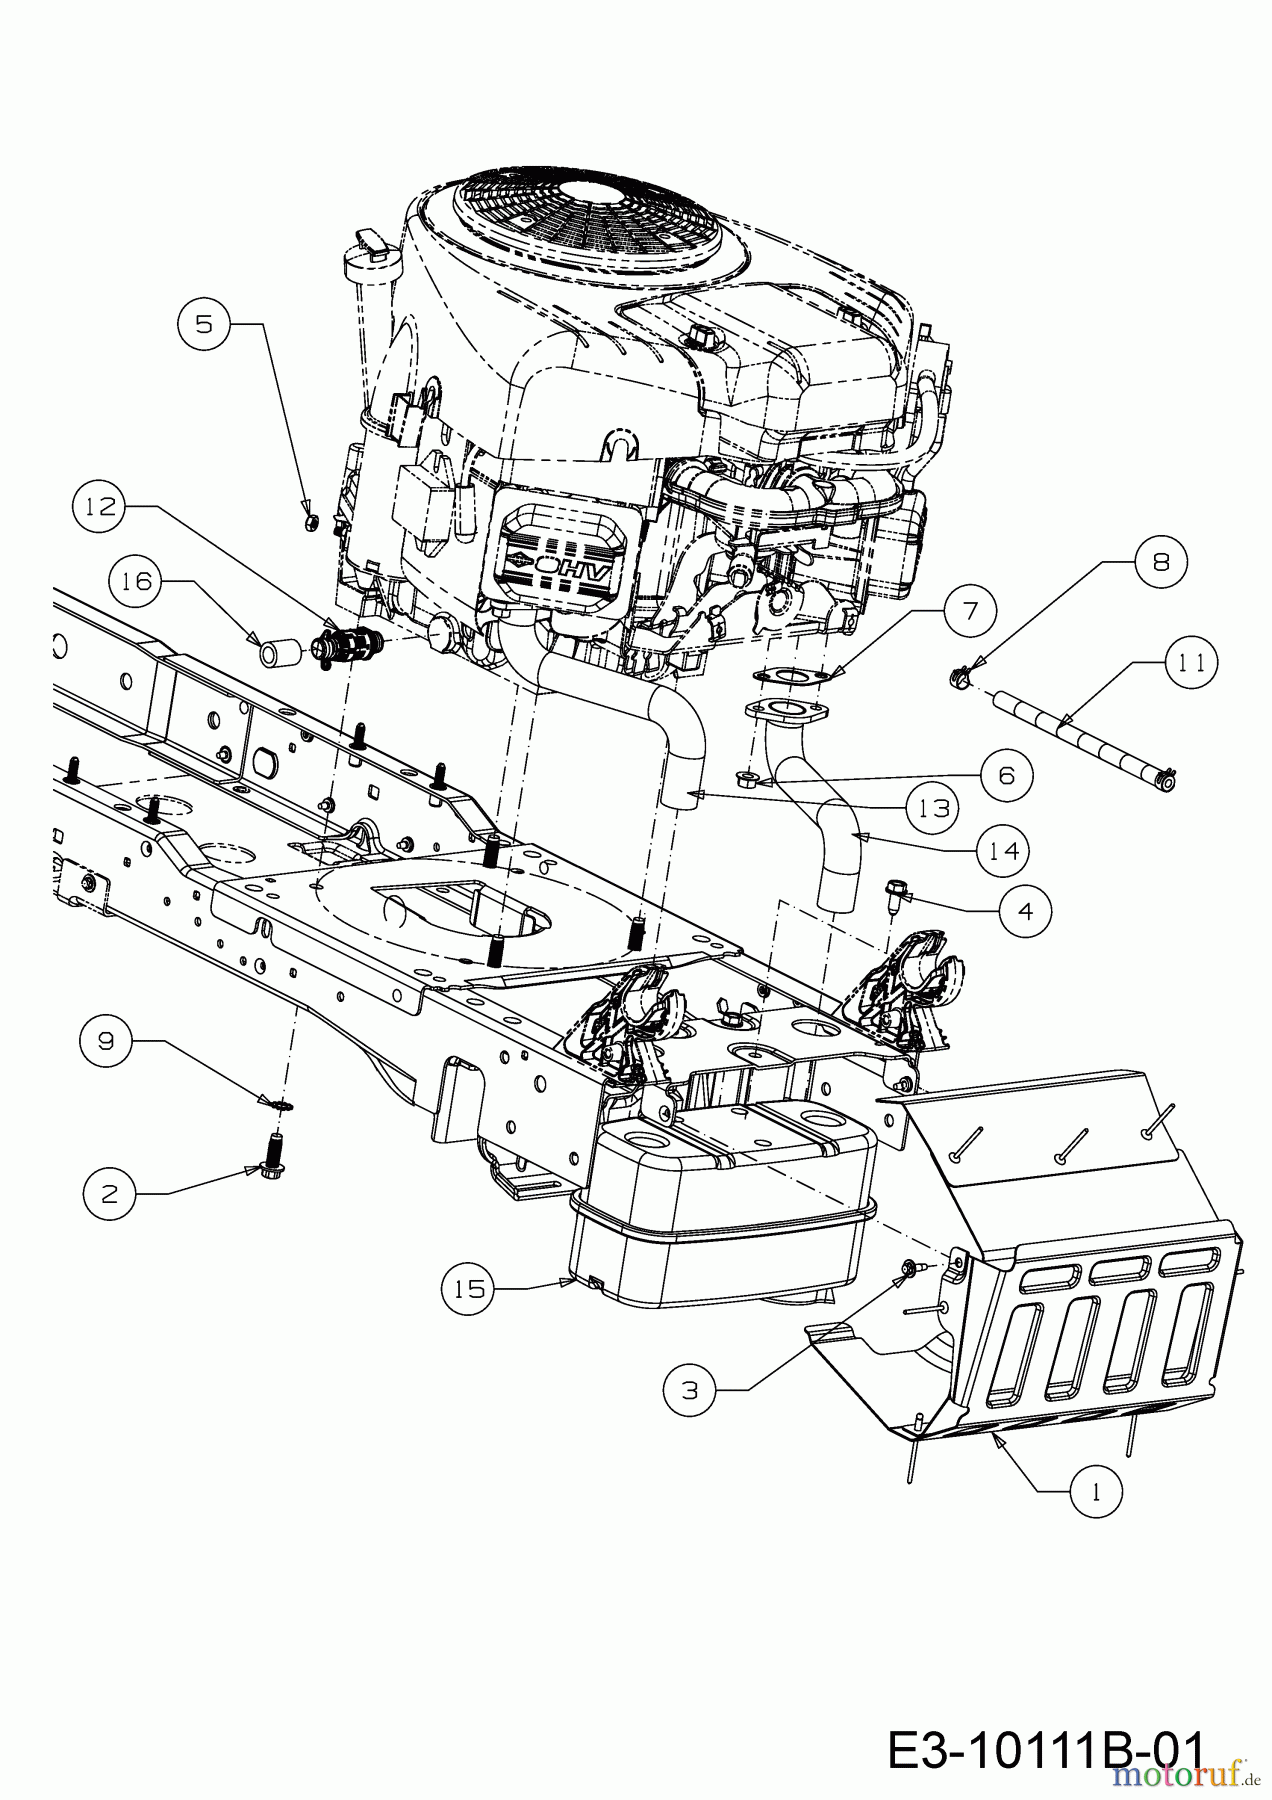  Wolf-Garten Lawn tractors 106.220 H 13BAA1VR650  (2019) Engine accessories